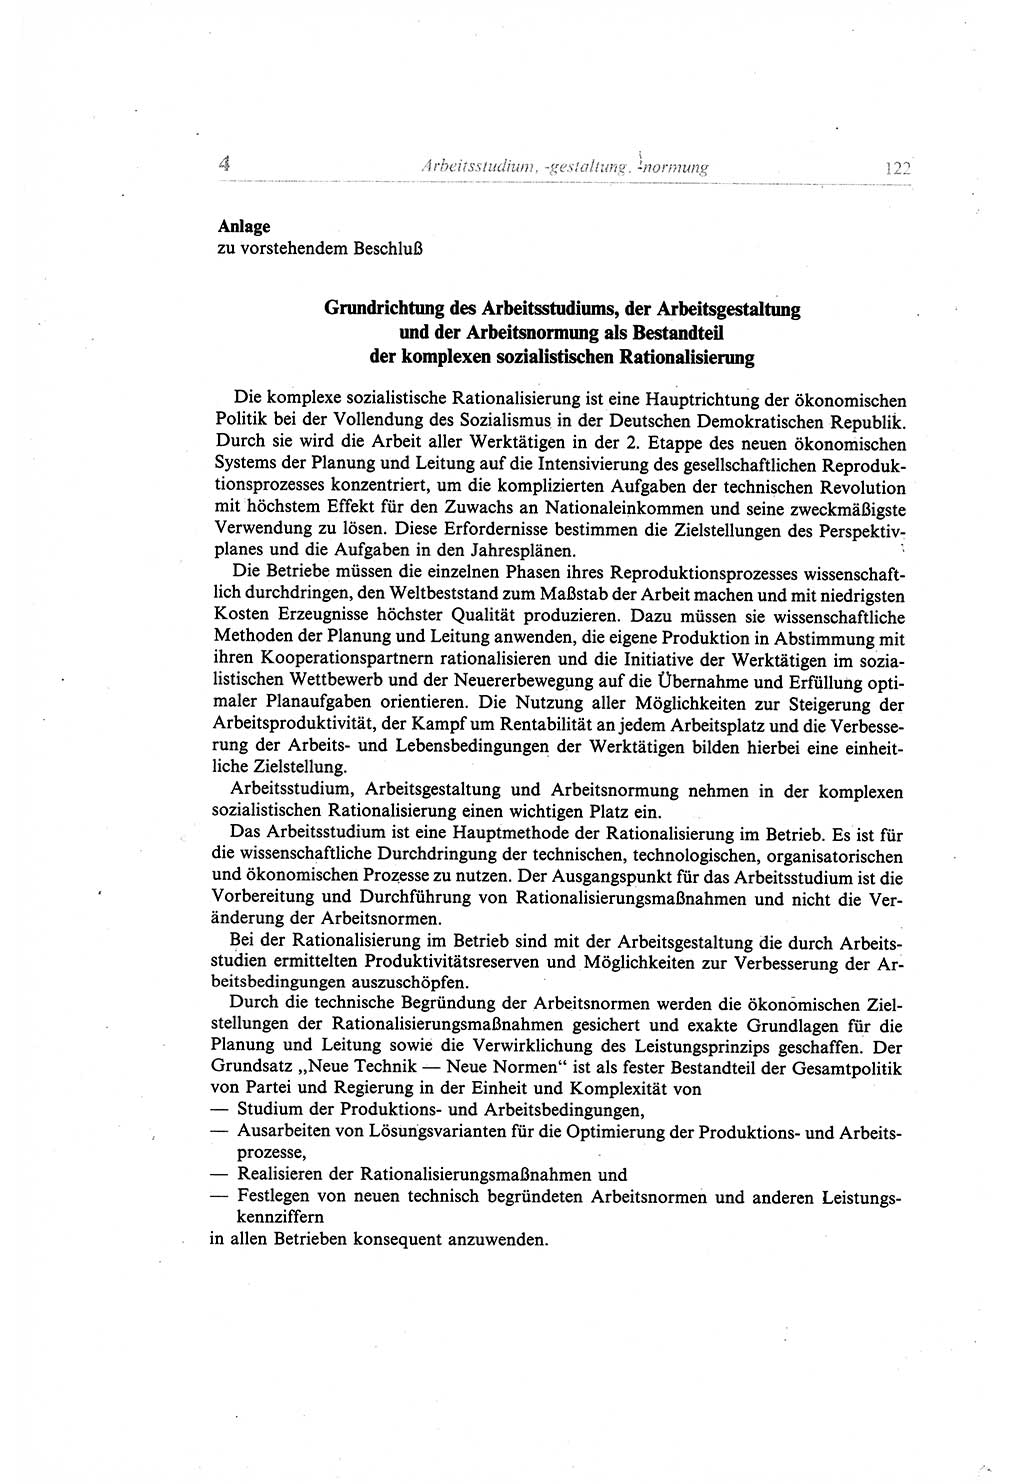 Gesetzbuch der Arbeit (GBA) und andere ausgewählte rechtliche Bestimmungen [Deutsche Demokratische Republik (DDR)] 1968, Seite 122 (GBA DDR 1968, S. 122)